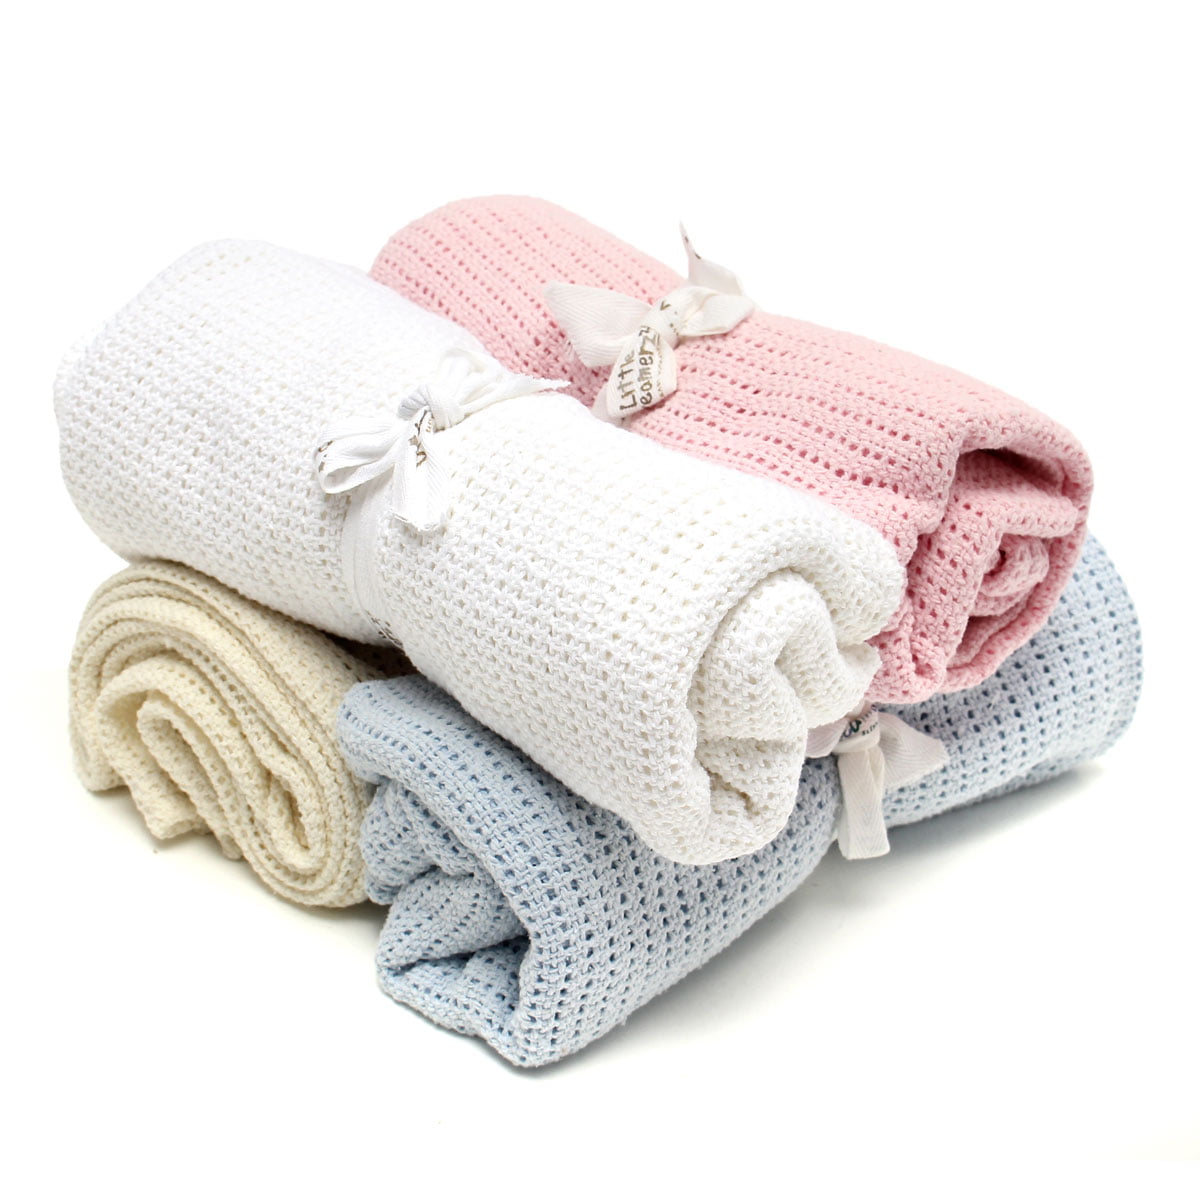 2 x Baby Pram/Crib/ Moses Basket Flat Sheet 100% Cotton Pink